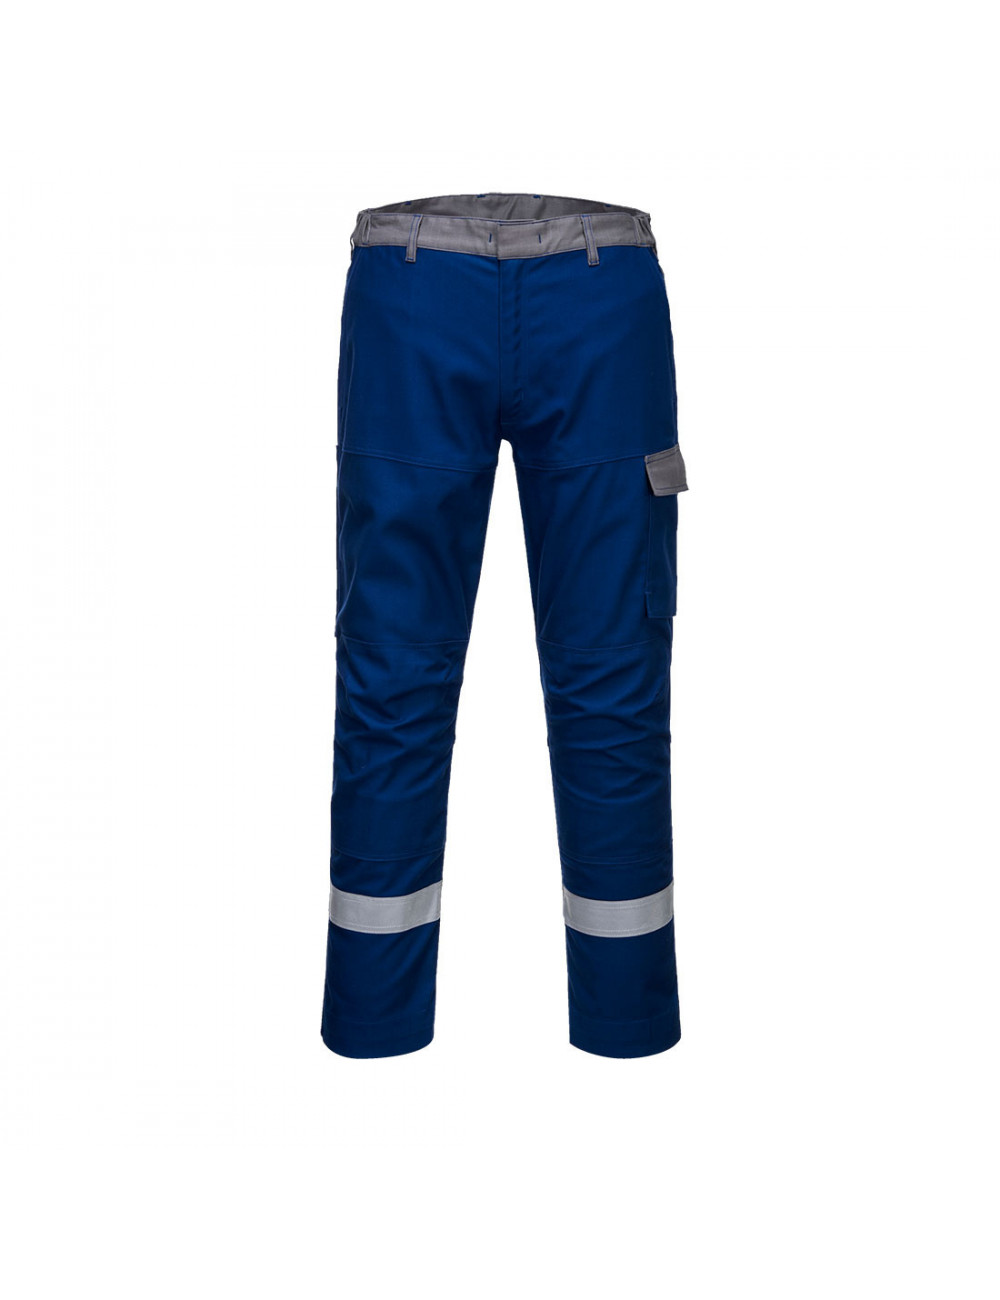 Spodnie dwukolorowe bizflame ultra royal niebieski Portwest